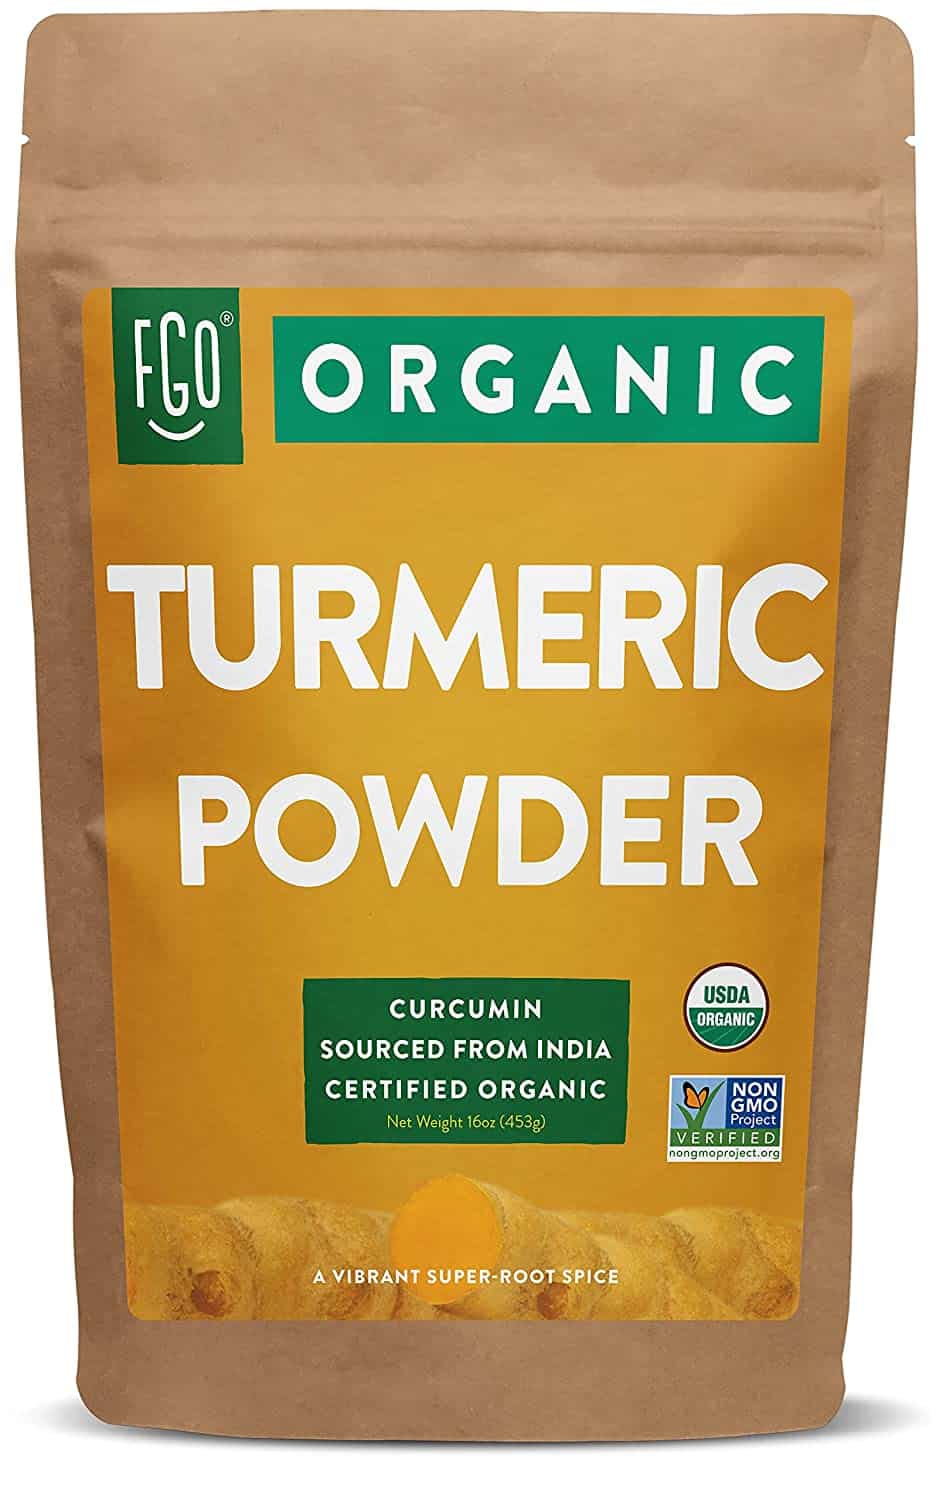 organic turmeric powder e le sebaka sa phofo ea msutard